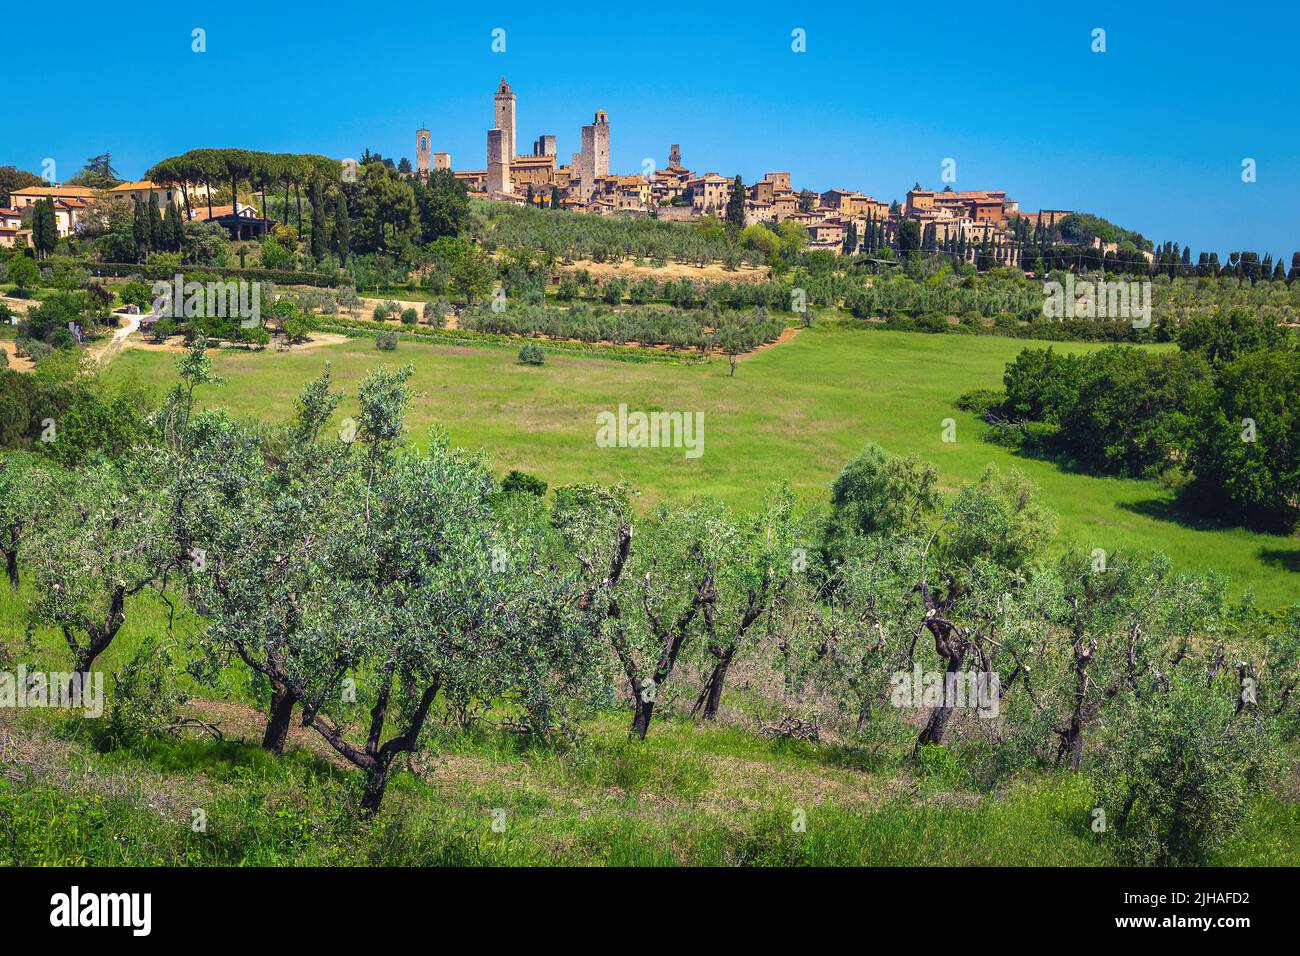 Célèbre San Gimignano avec des tours fantastiques sur la colline. Grand paysage urbain avec plantation d'oliviers en Toscane, San Gimignano, Italie, Europe Banque D'Images